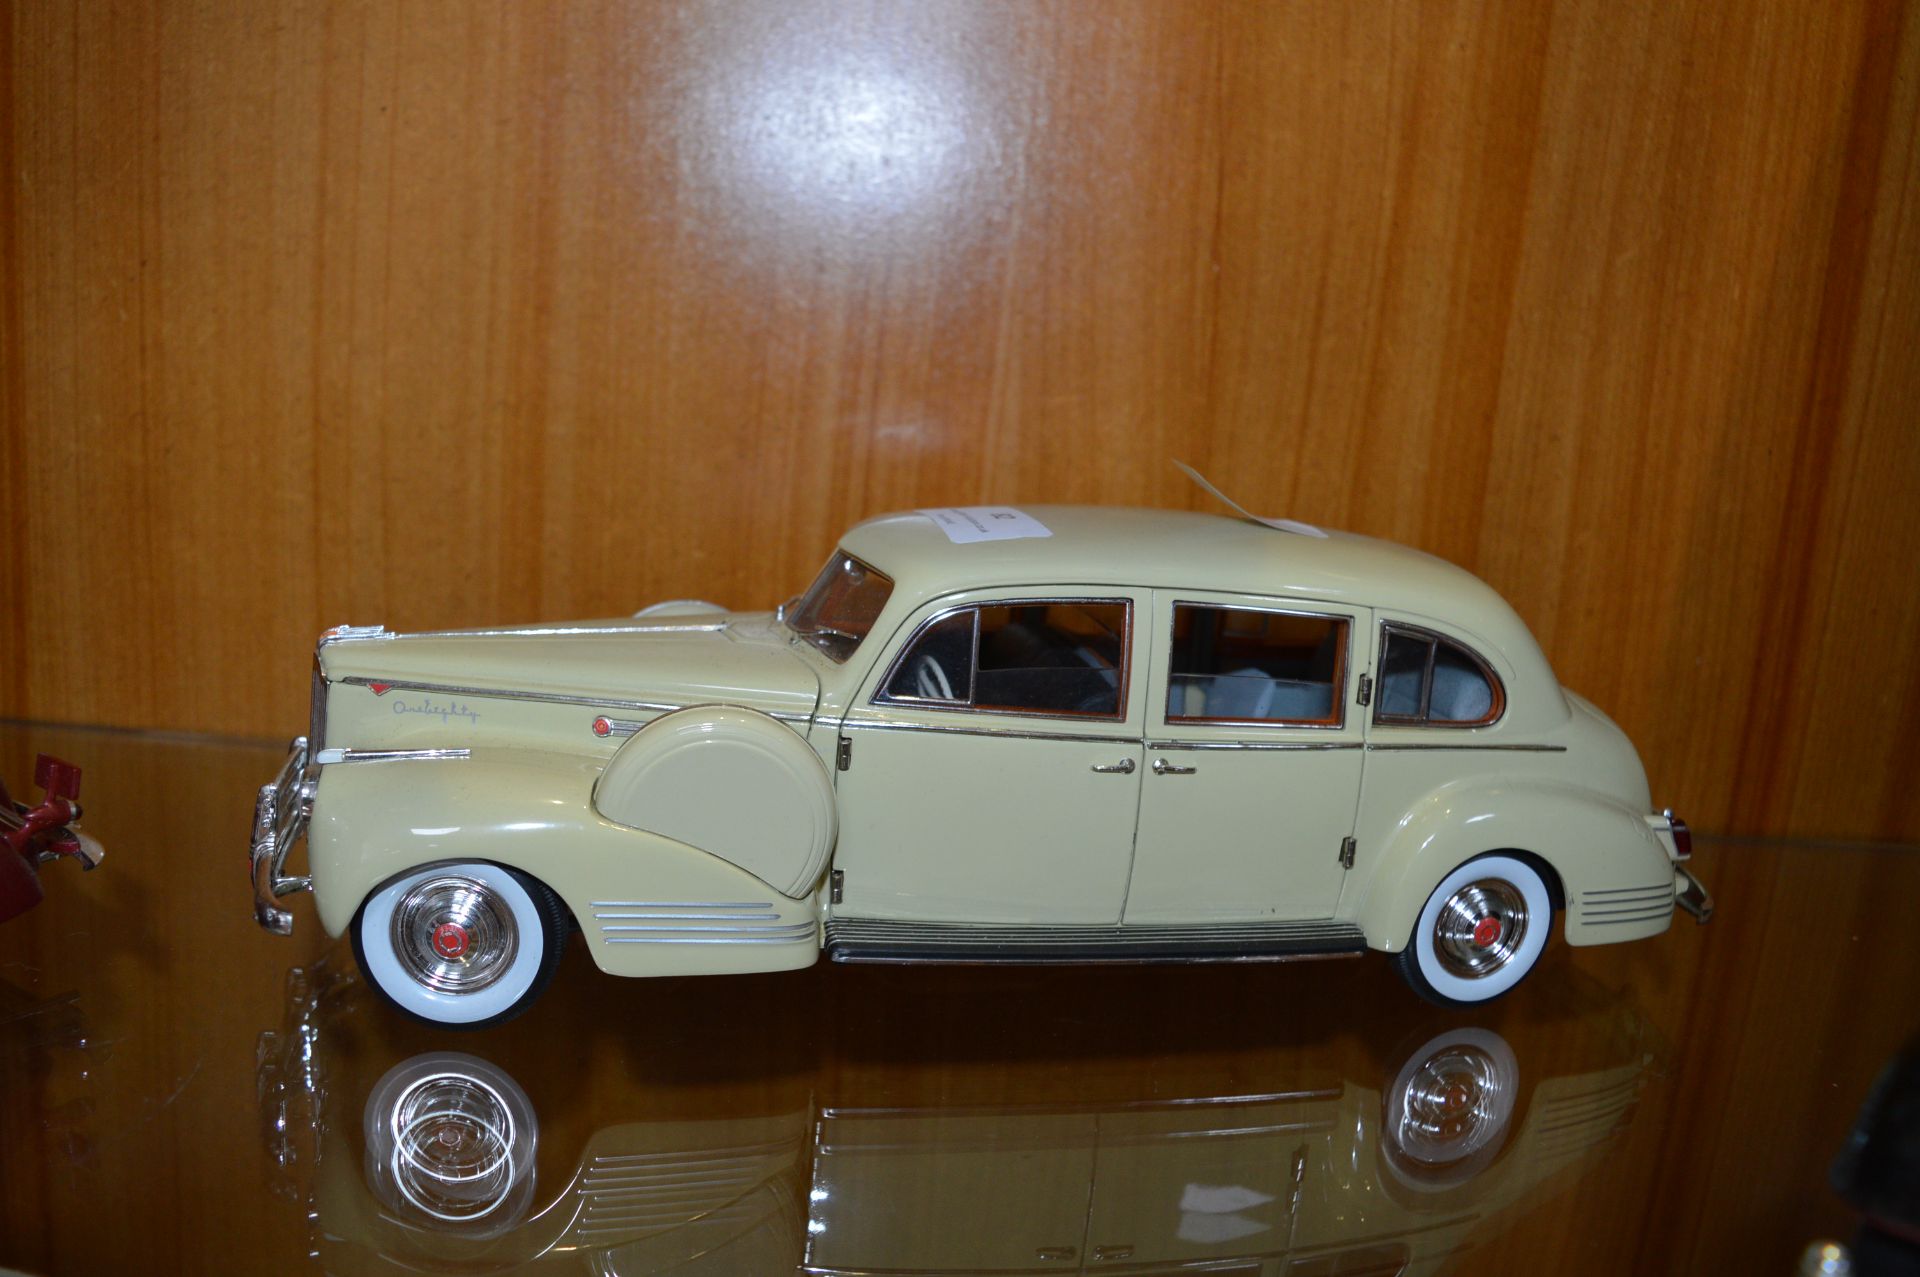 1941 Packard Le Baron Model Car